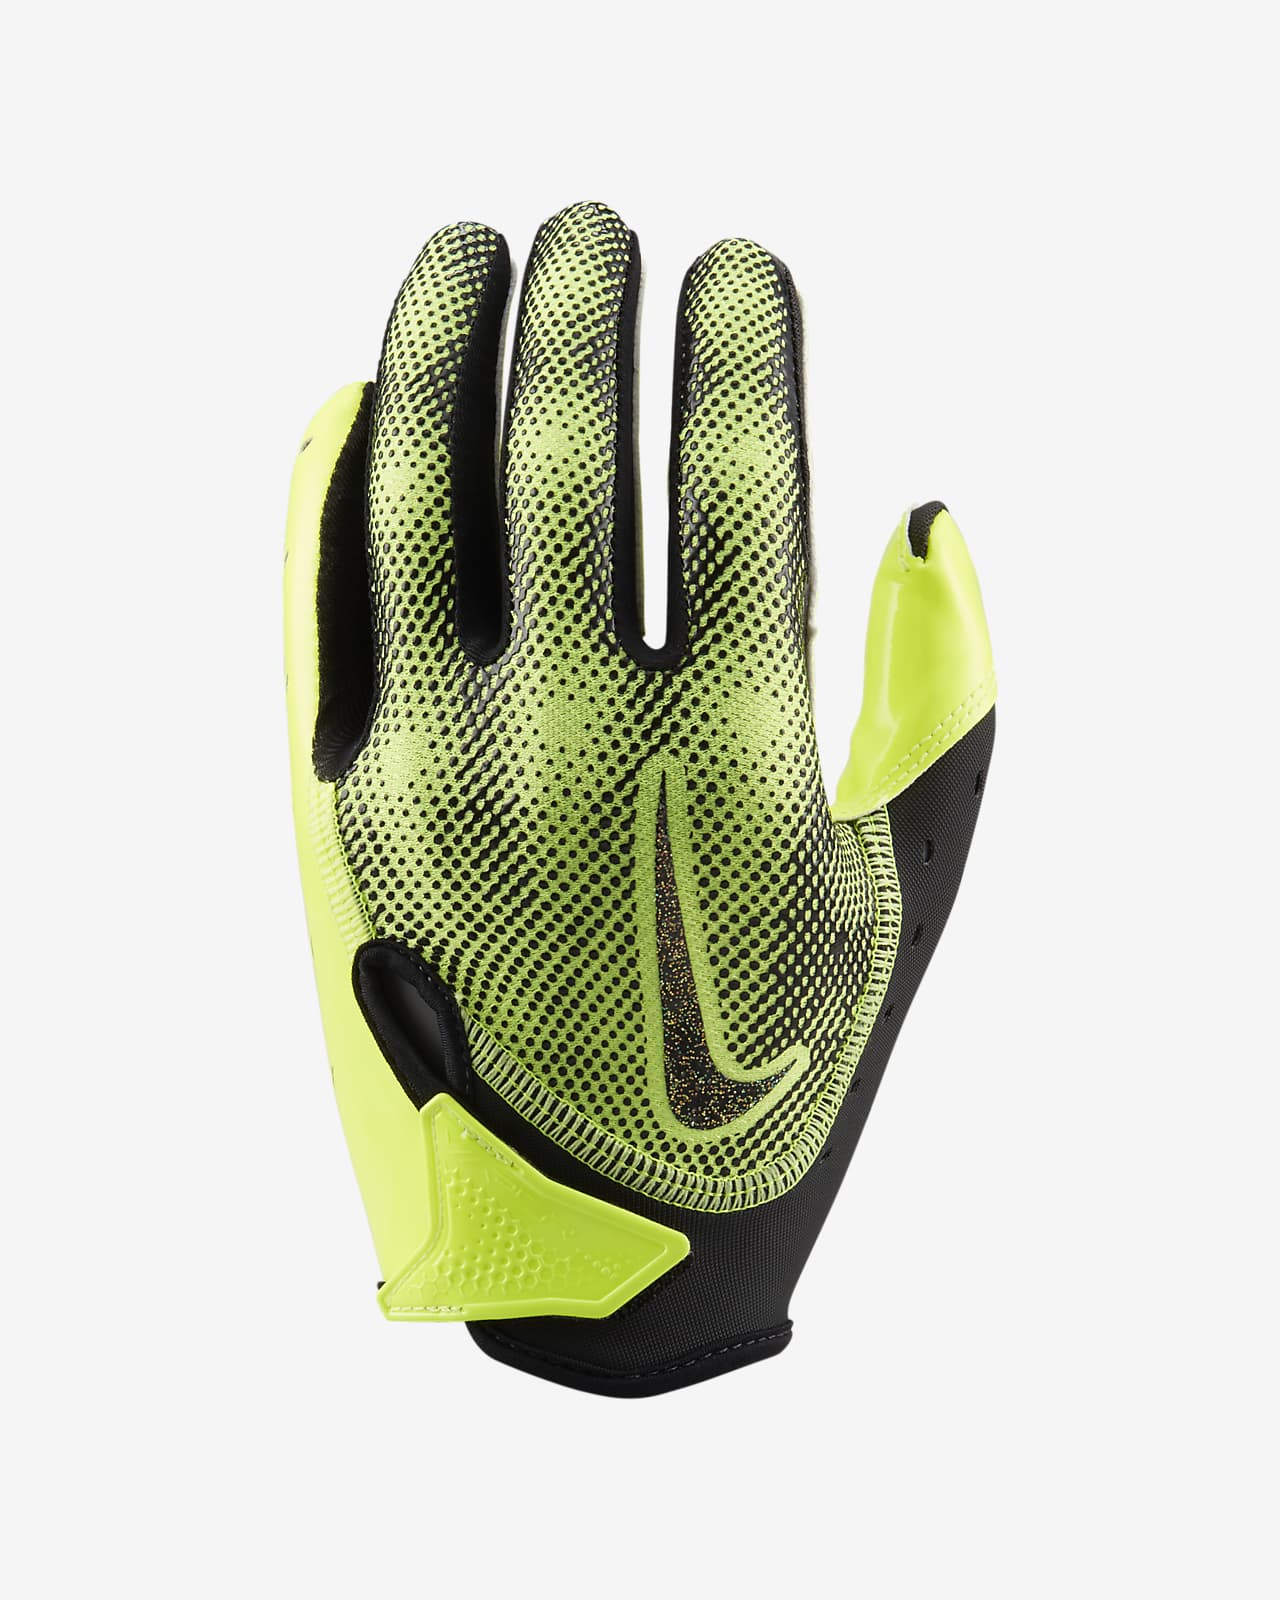 Nike Vapor Jet Kids' Football Gloves.